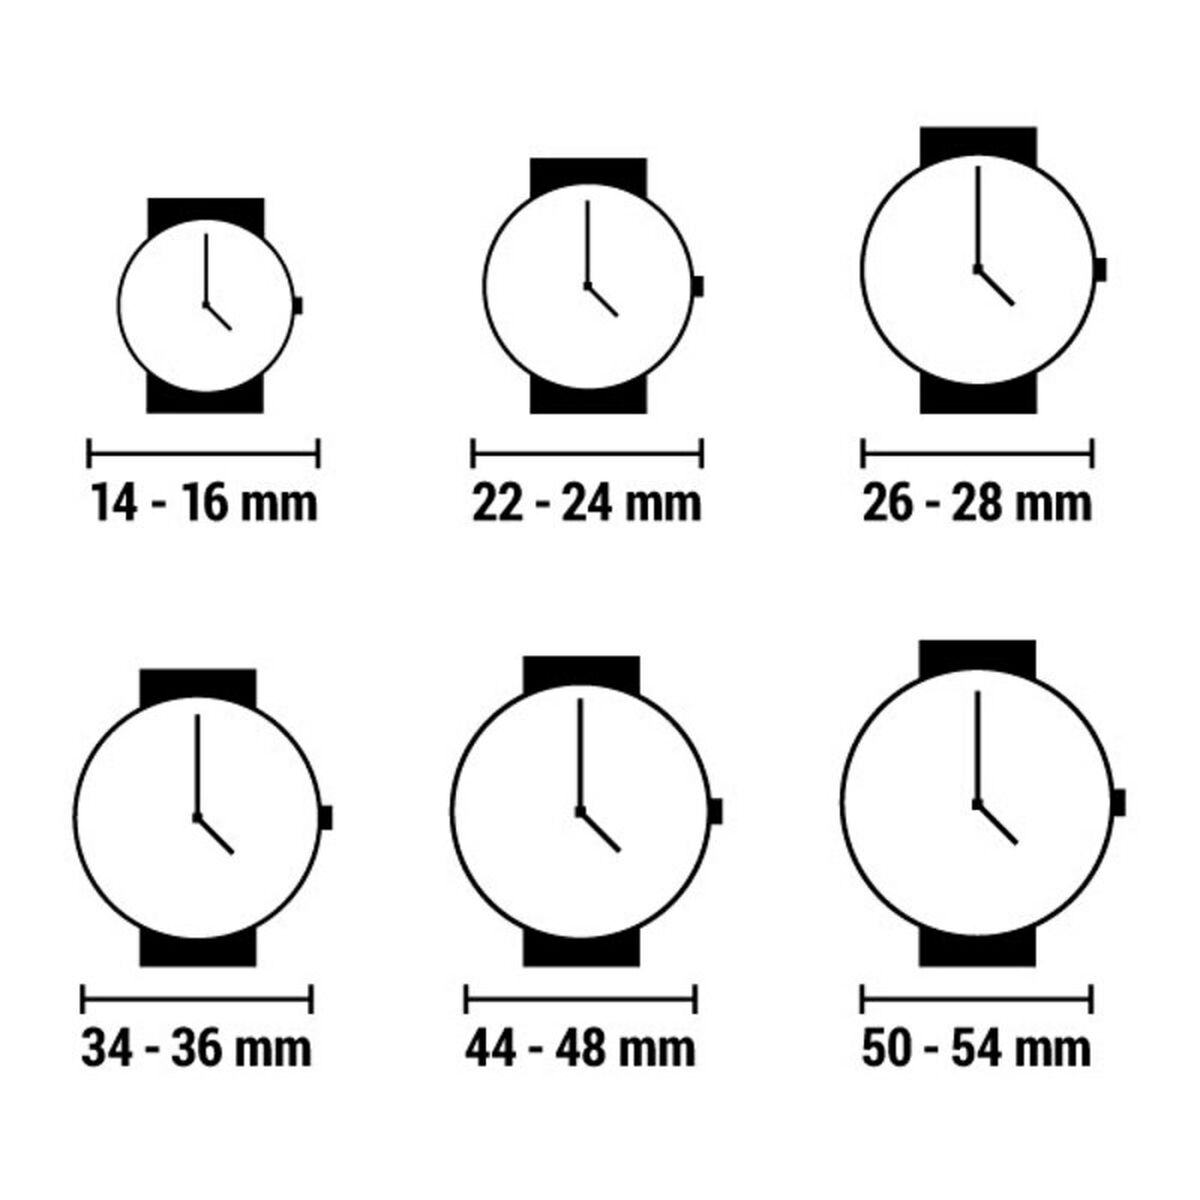 Horloge Heren Jason Hyde JH10004 (Ø 40 mm)